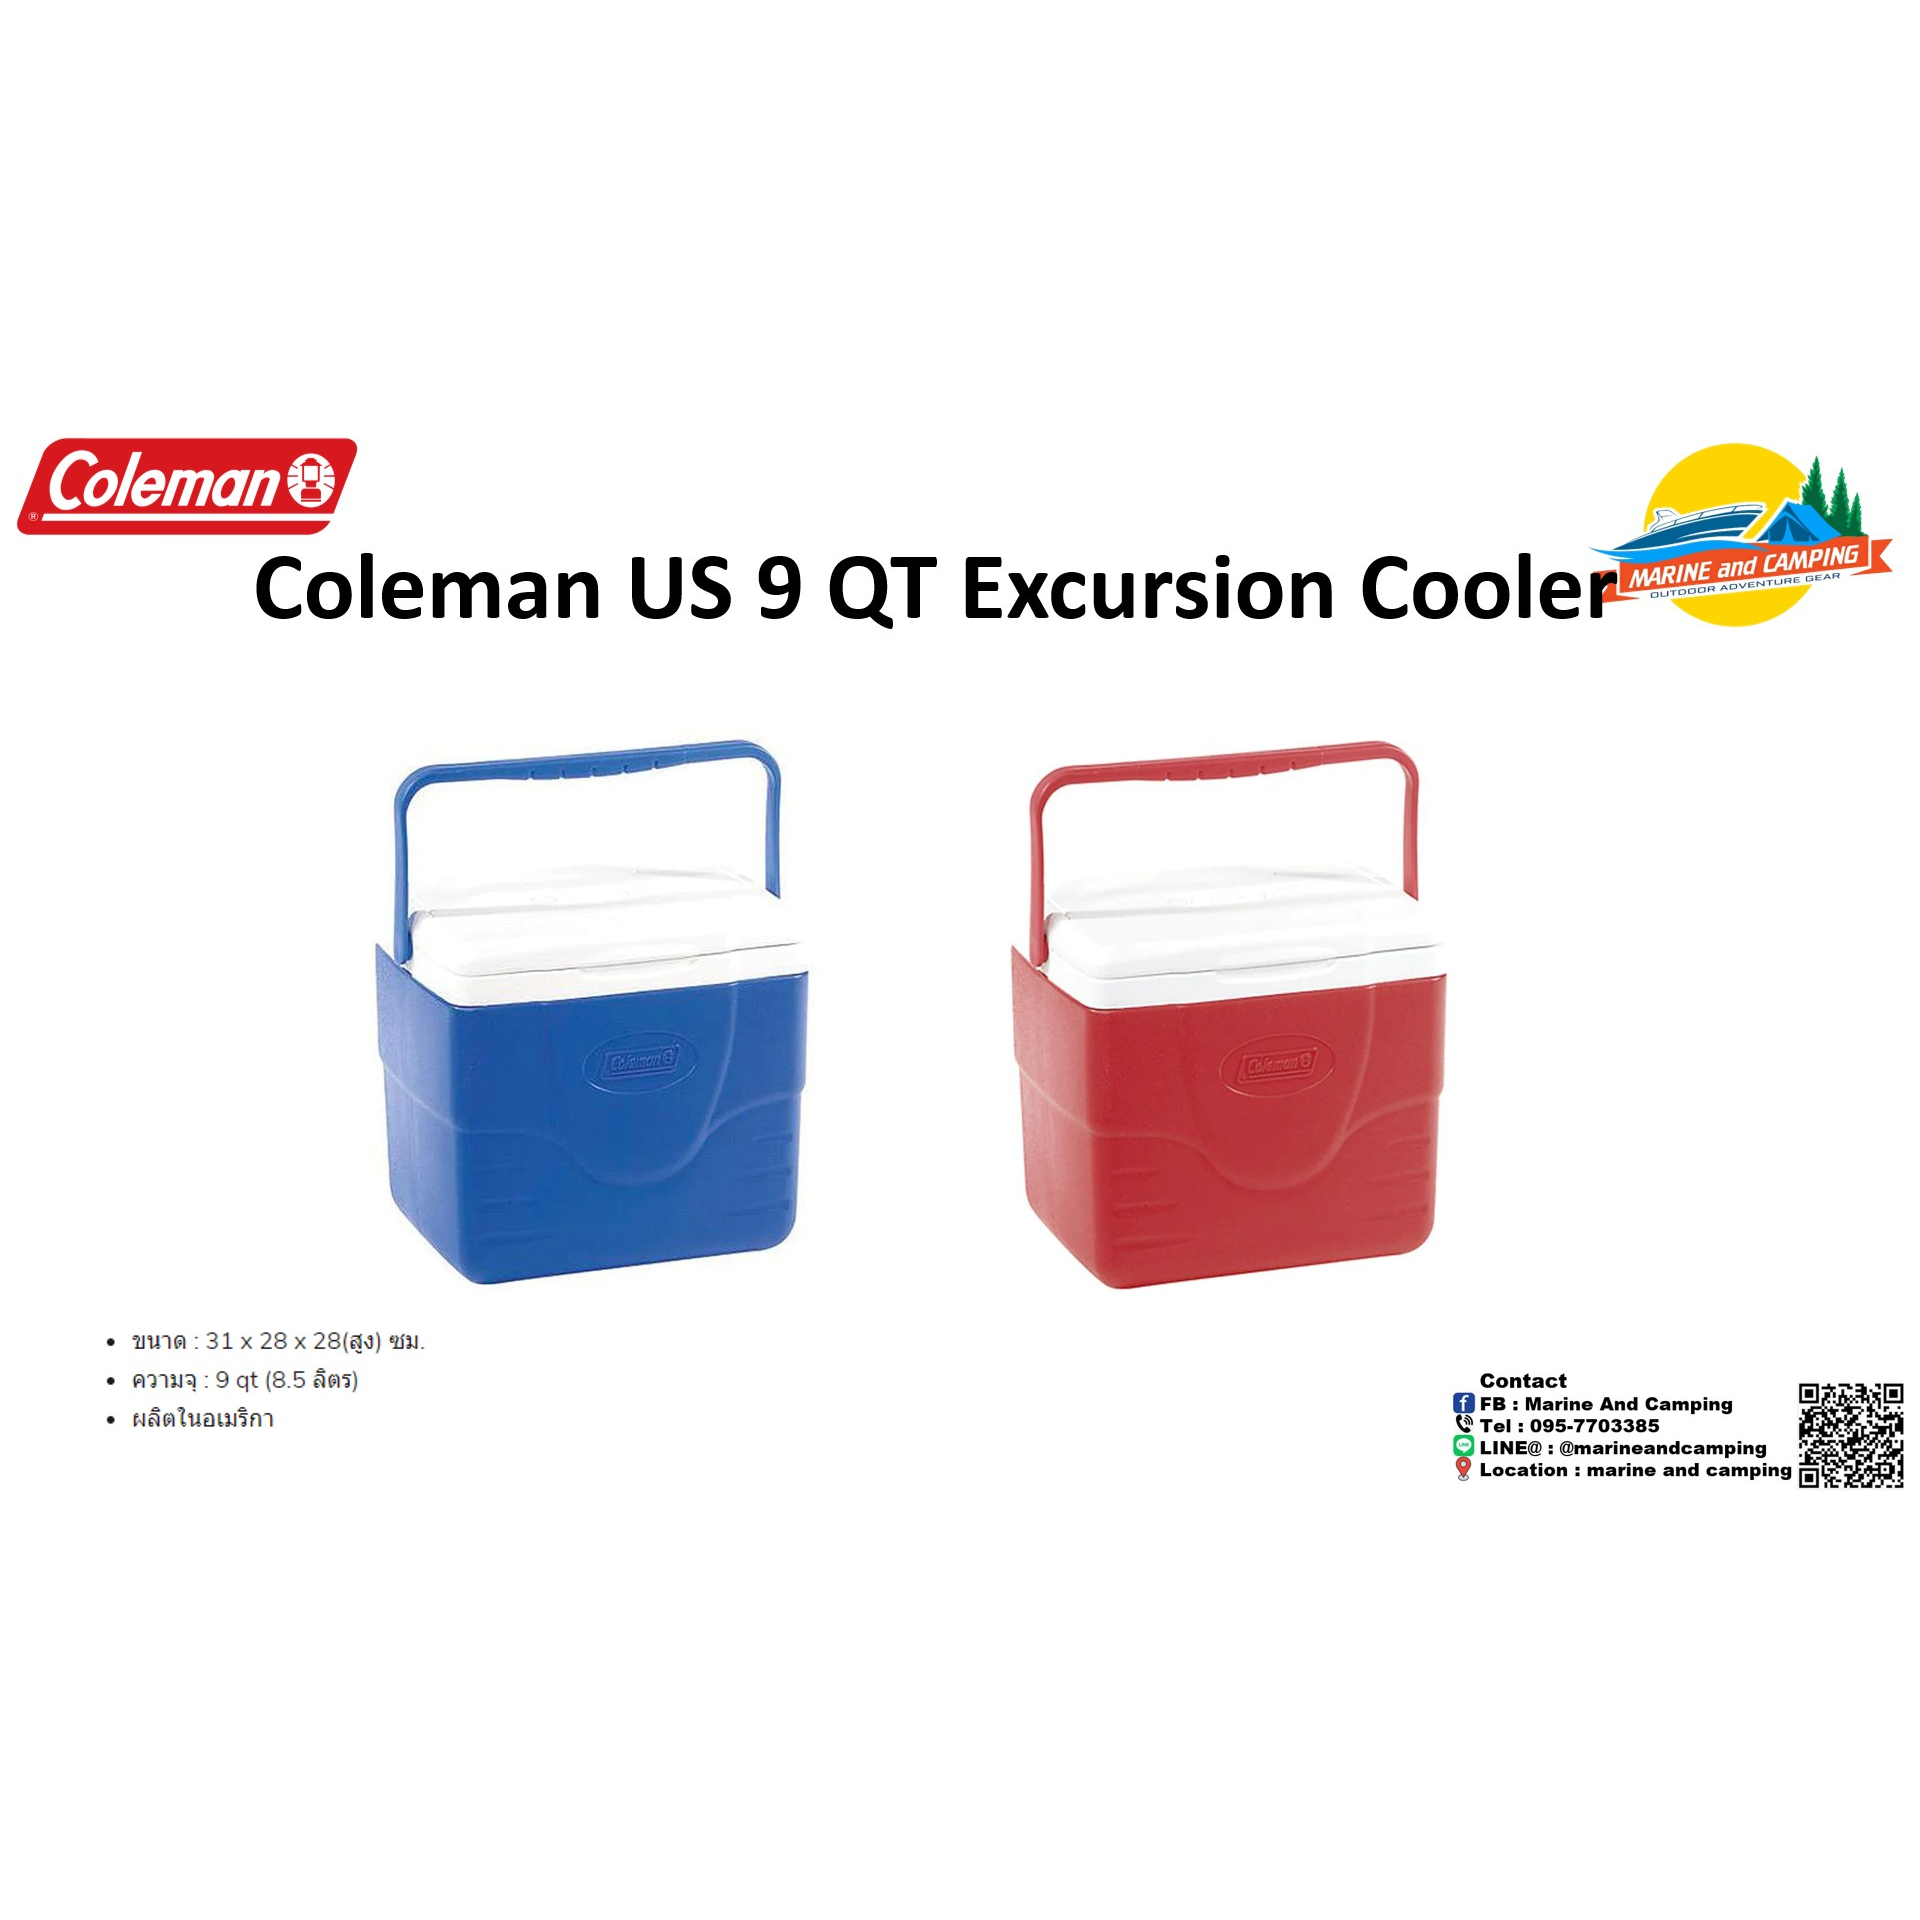 Coleman US 9 QT Excursion Cooler